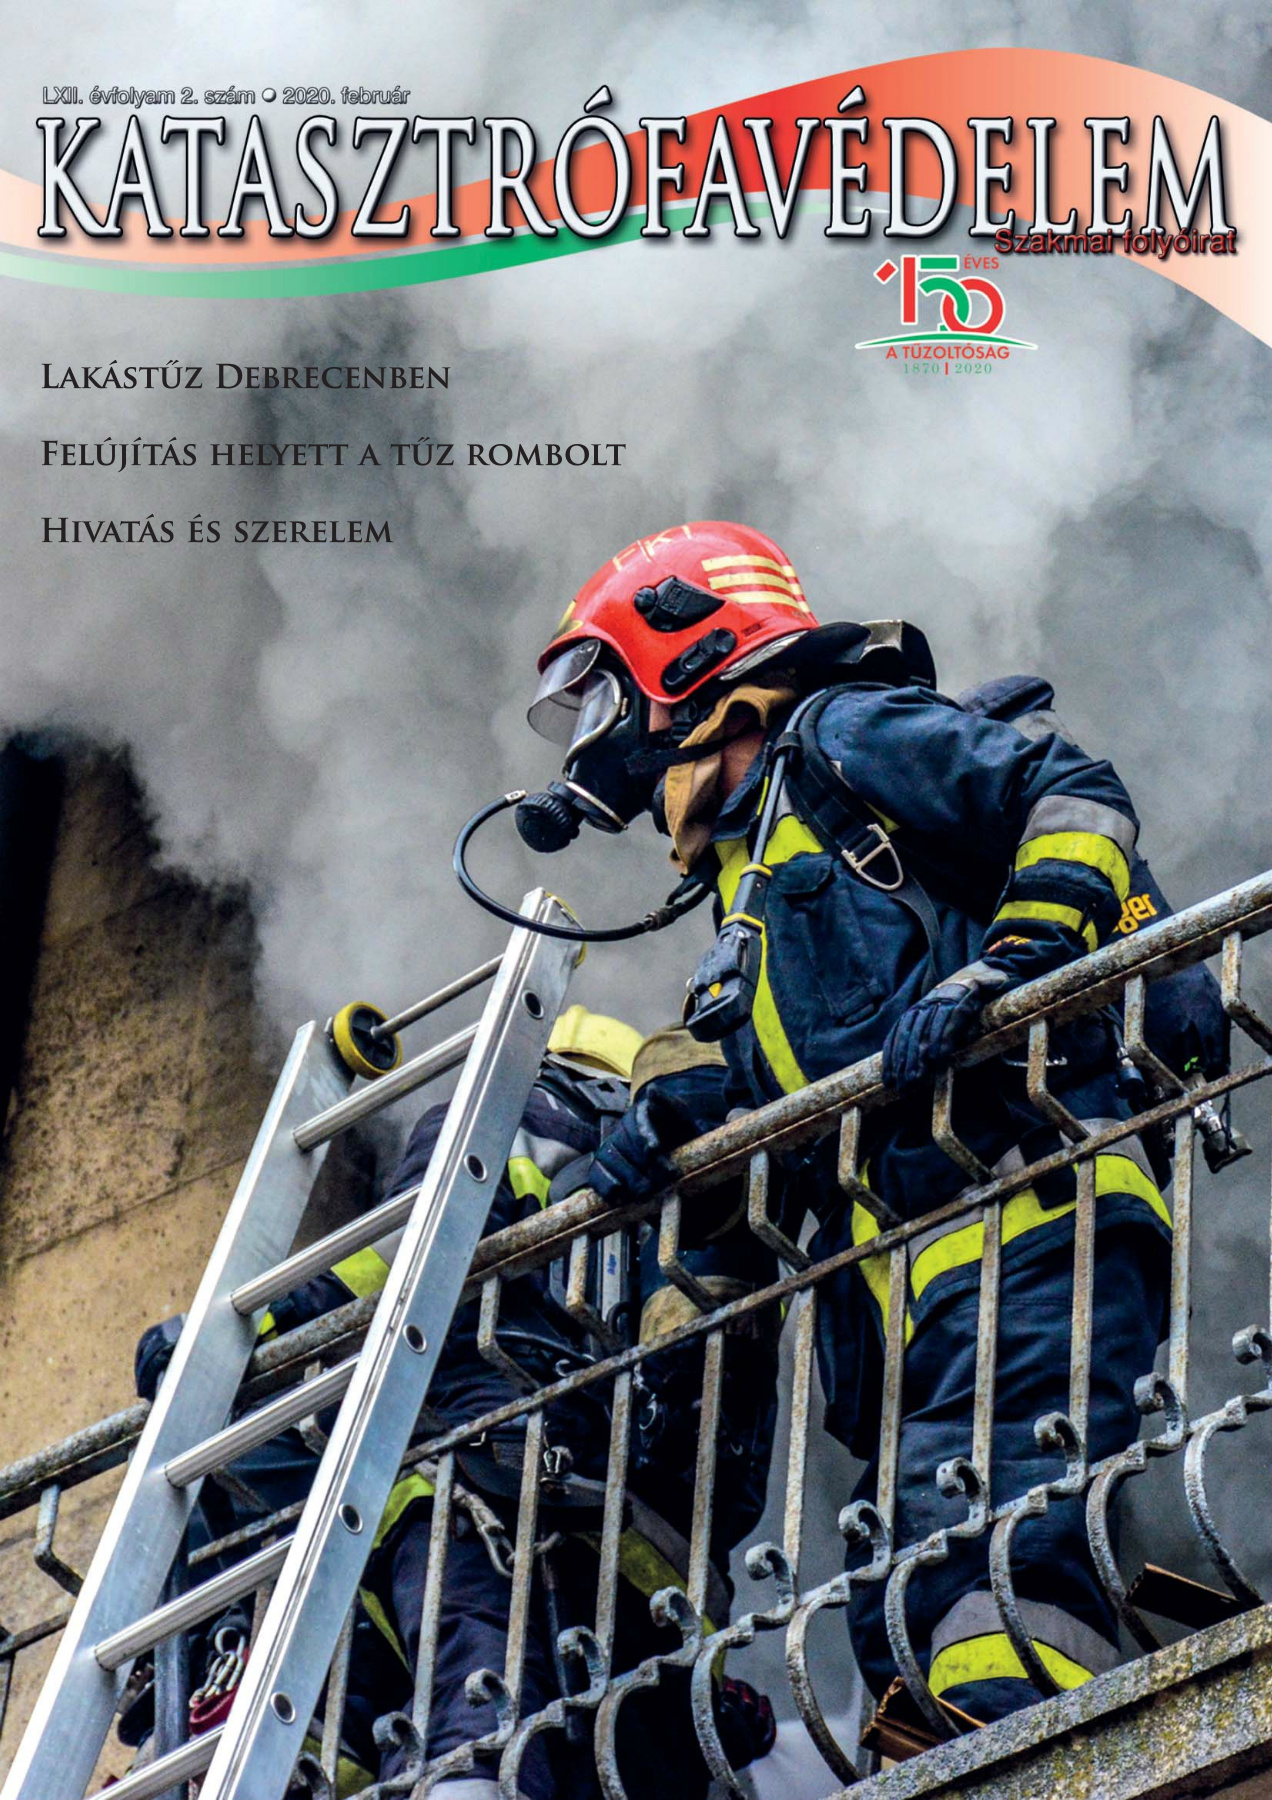 A Katasztrófavédelem magazin LXII. évfolyam 2. szám megtekintése